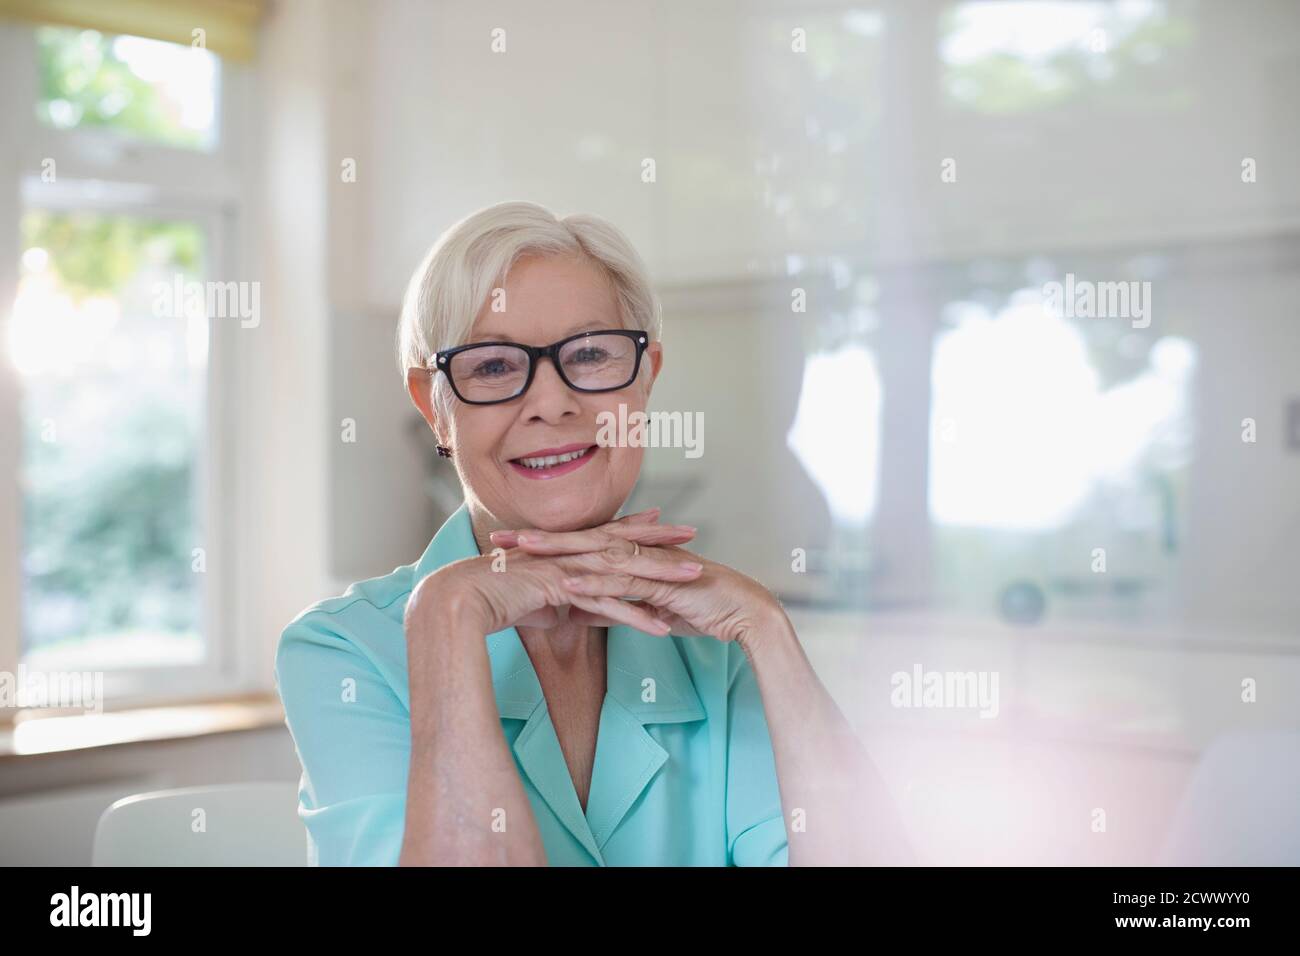 Portrait happy confident senior woman in eyeglasses Stock Photo